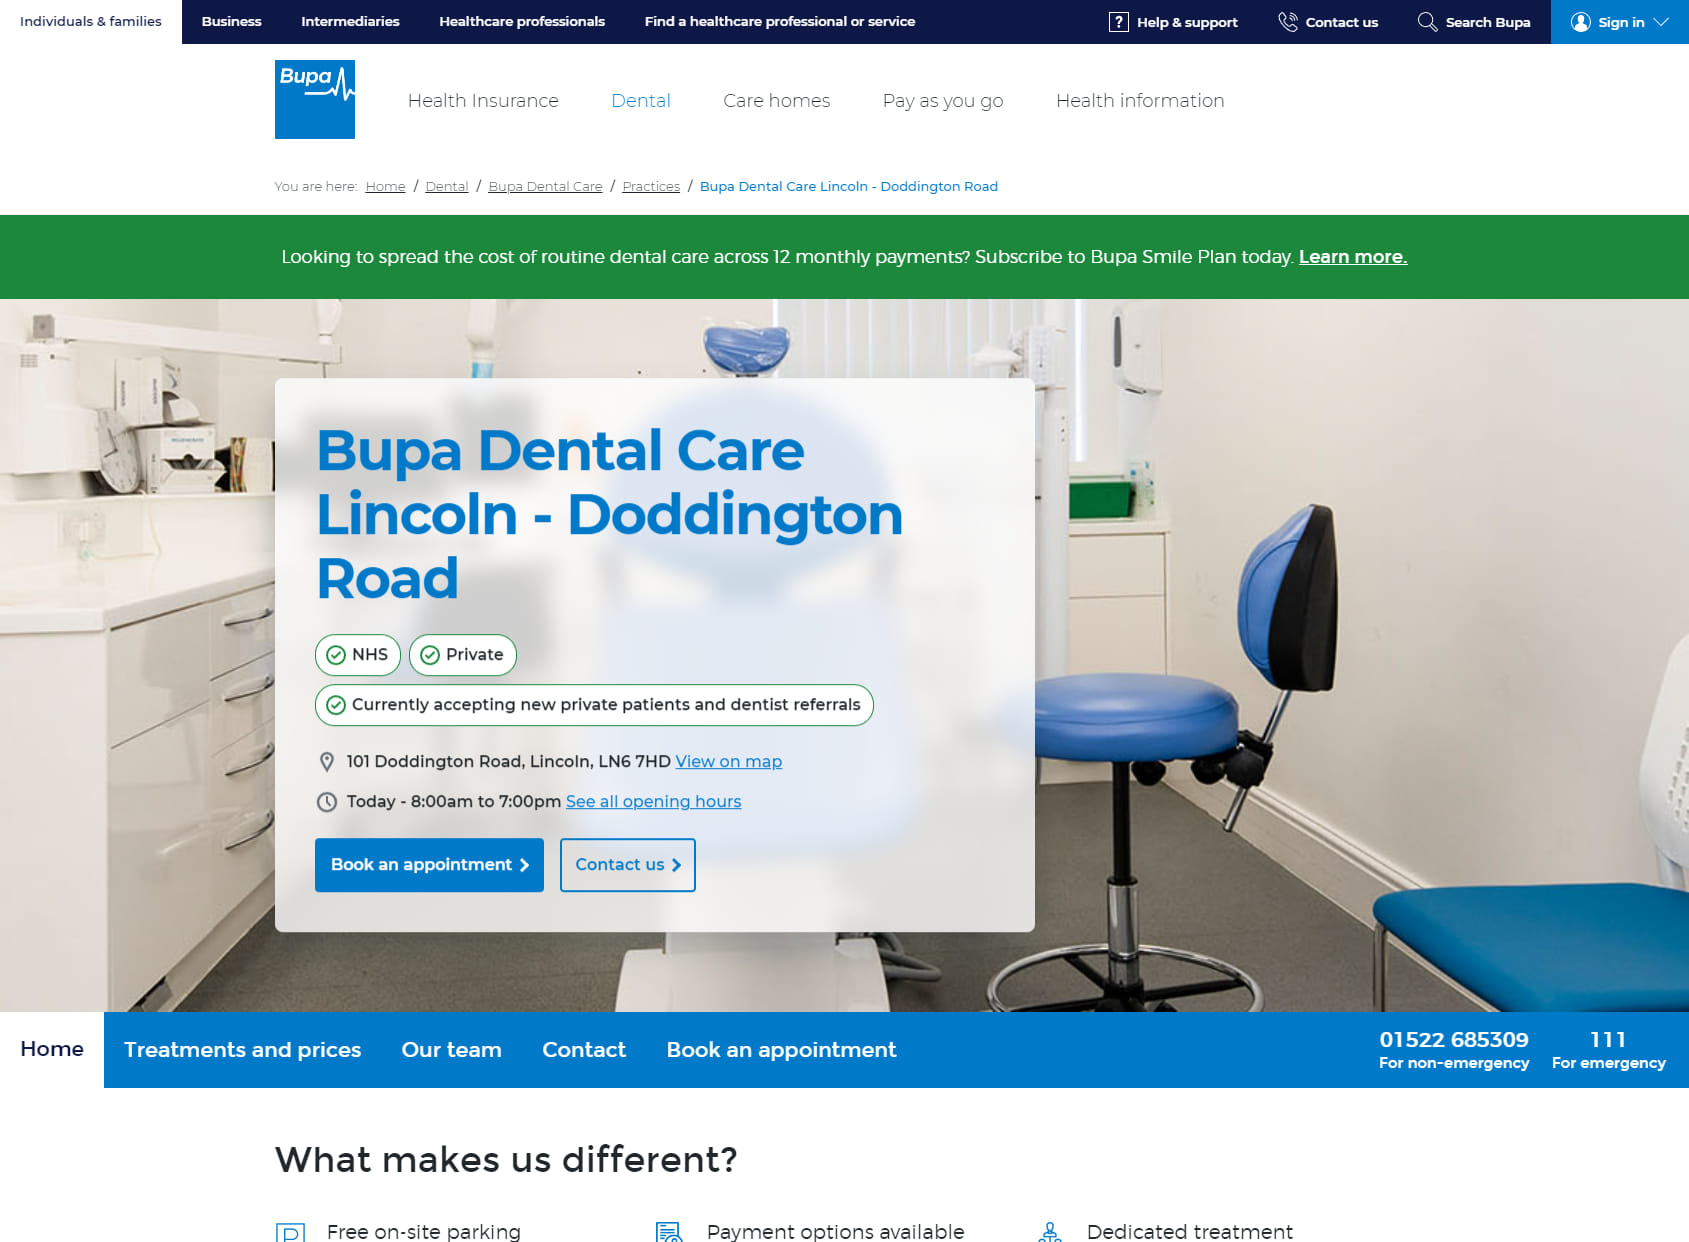 Bupa Dental Care Lincoln - Doddington Road